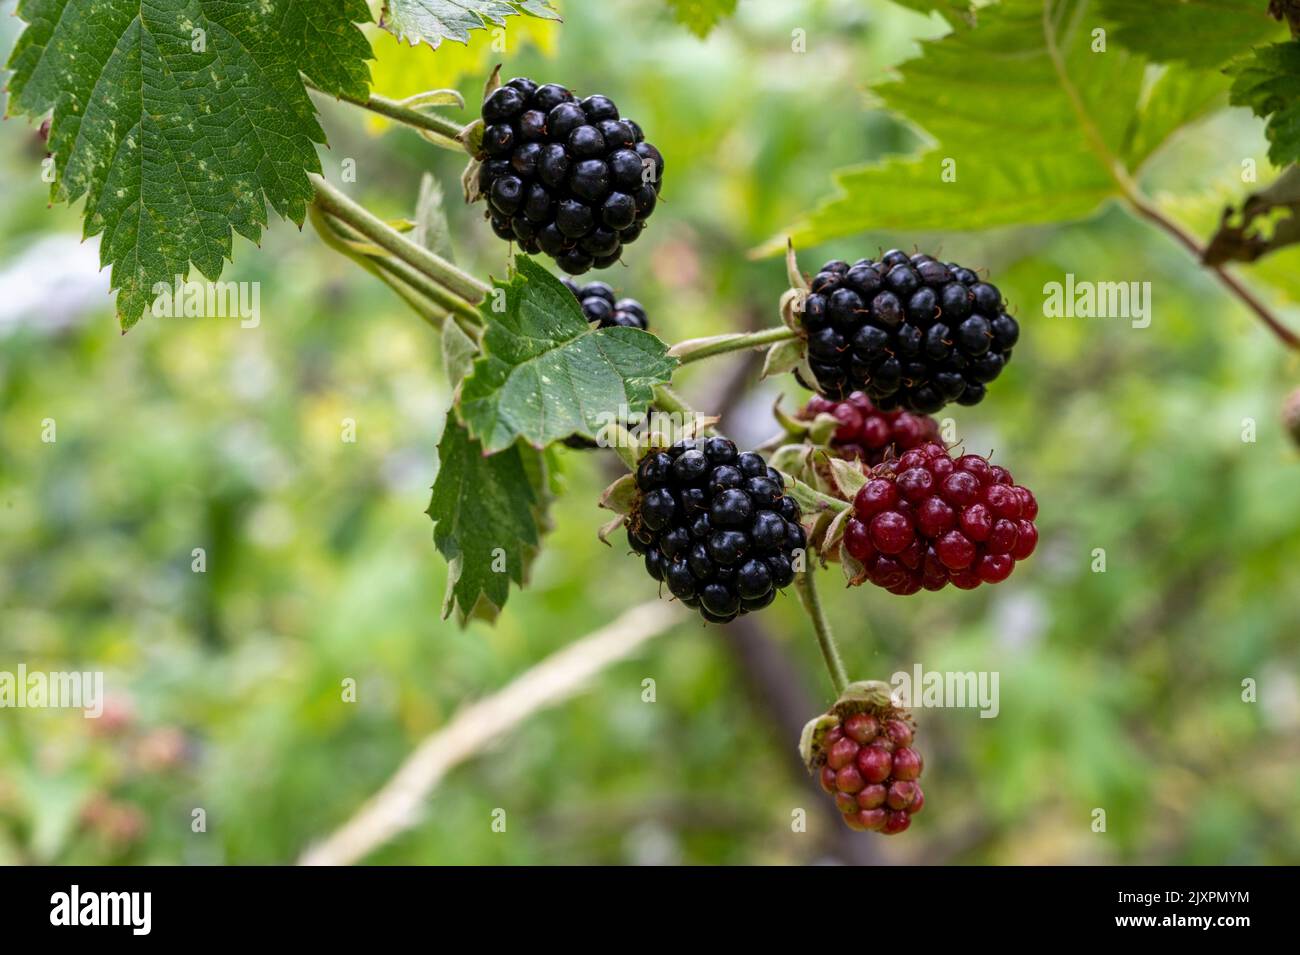 Les mûres de Boysenberries (rubus ursinus x idaeusare) mûrissent sur des cannes; un hybride de framboises européennes, de mûres, de mûres américaines et de mûres de mûres. Banque D'Images